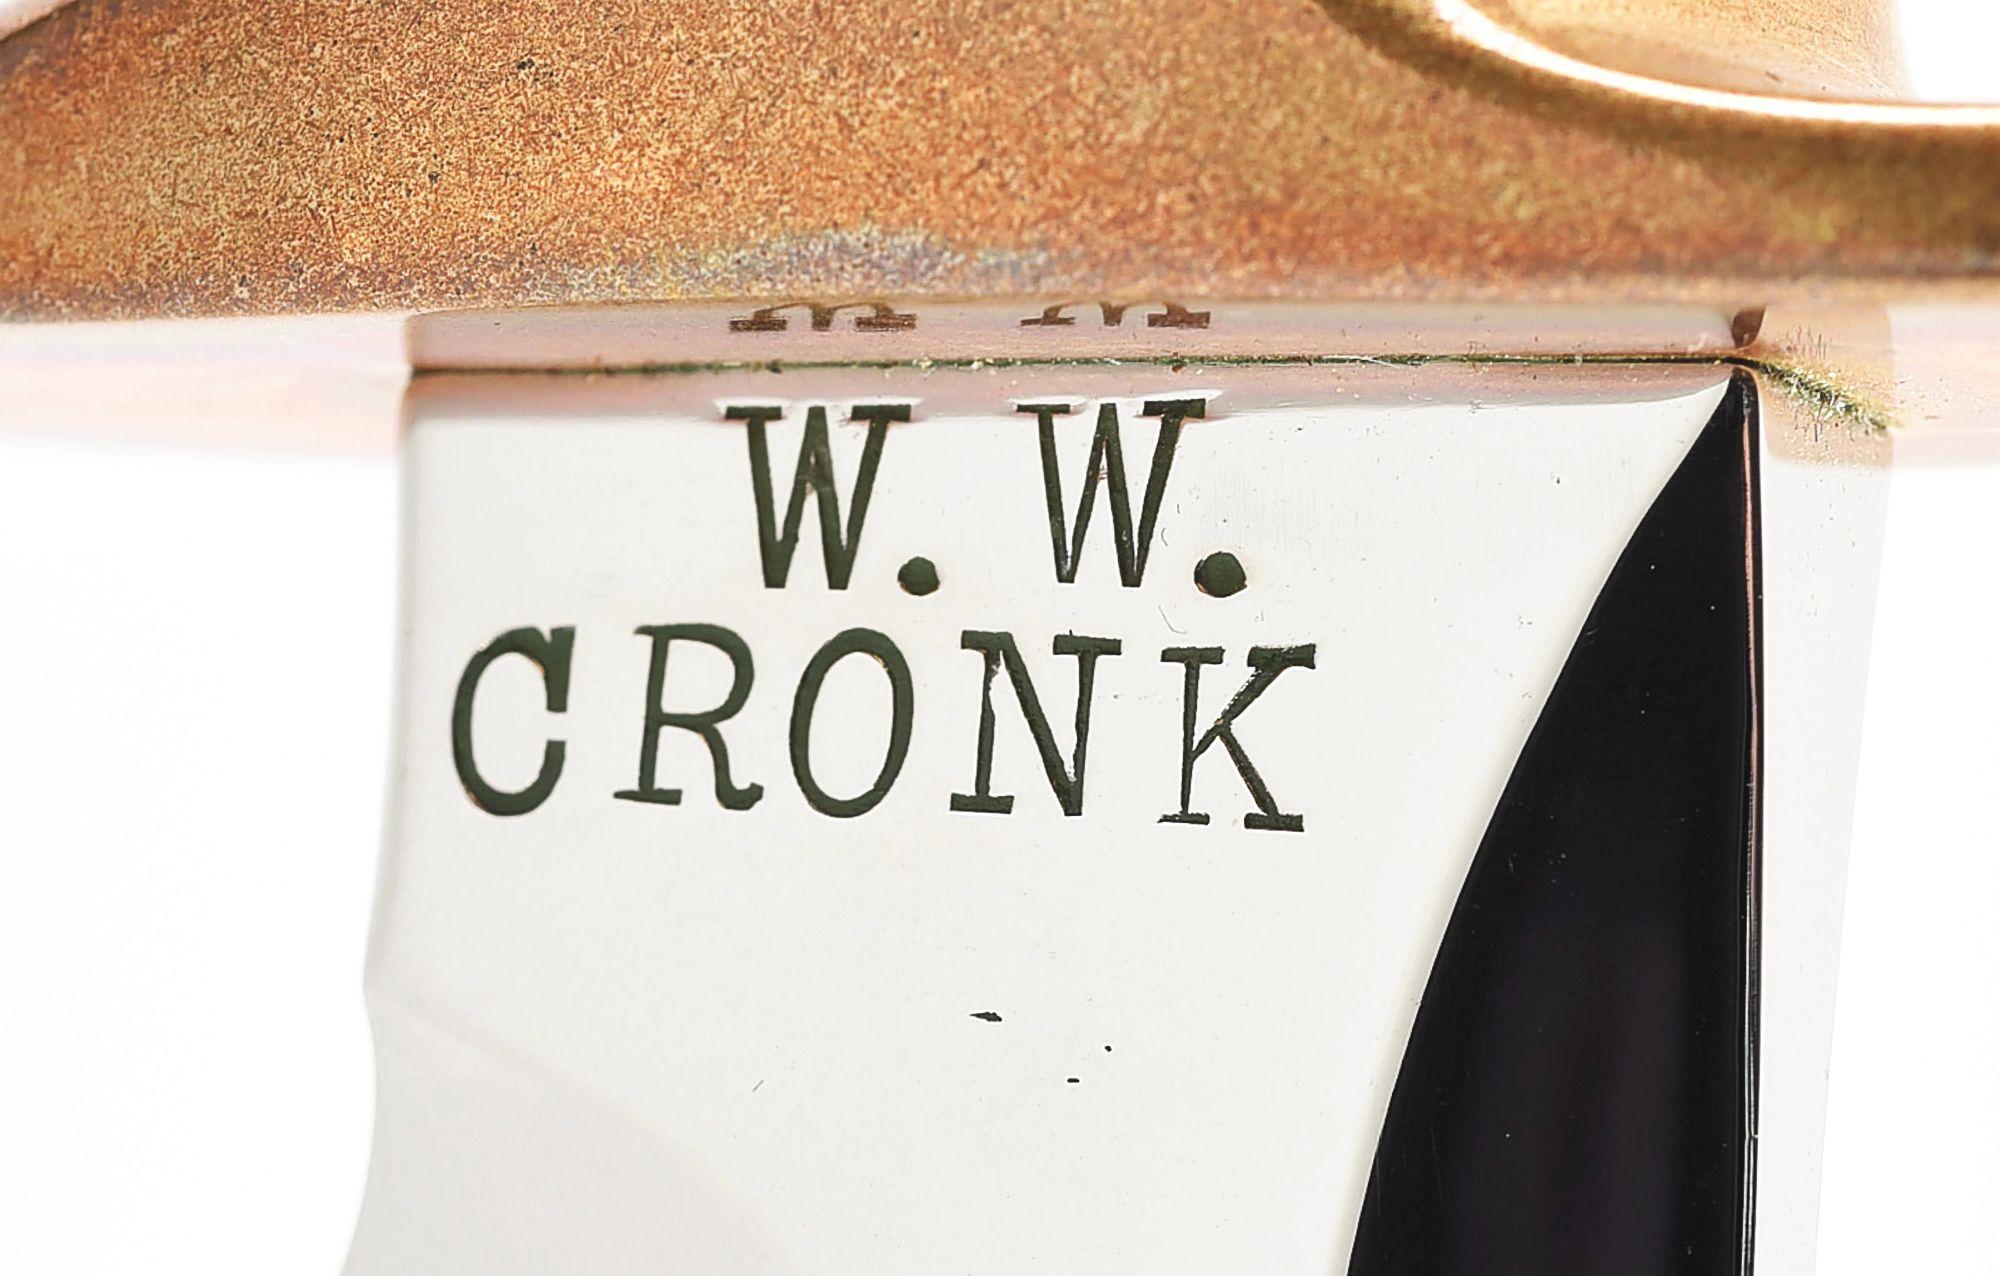 W.W. "BUD" CRONK SUB HILT FIGHTER.